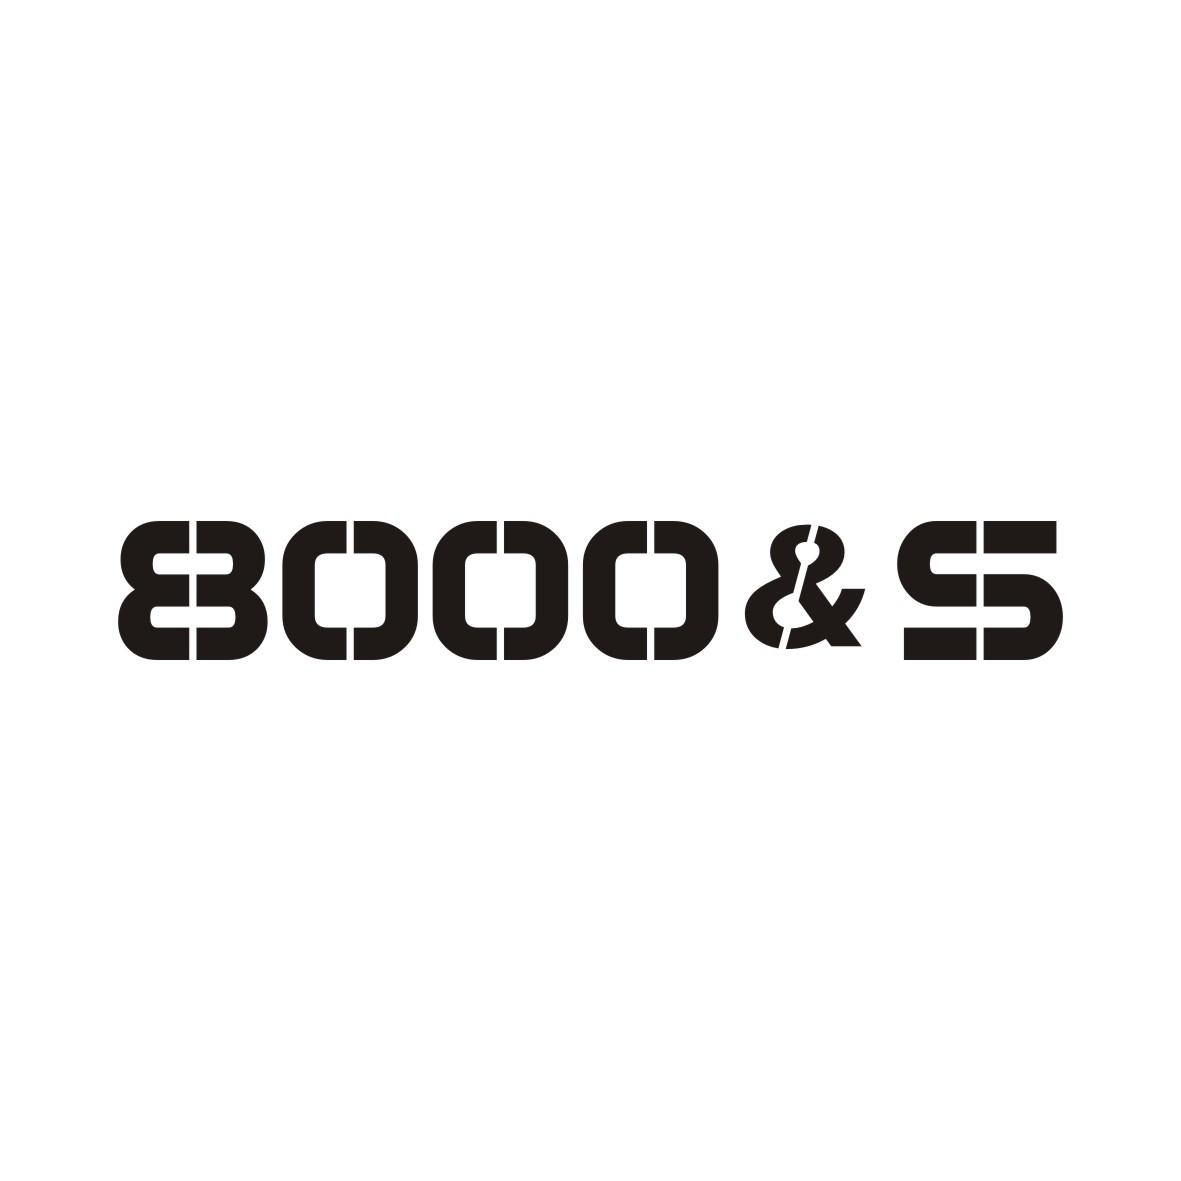 8000&S